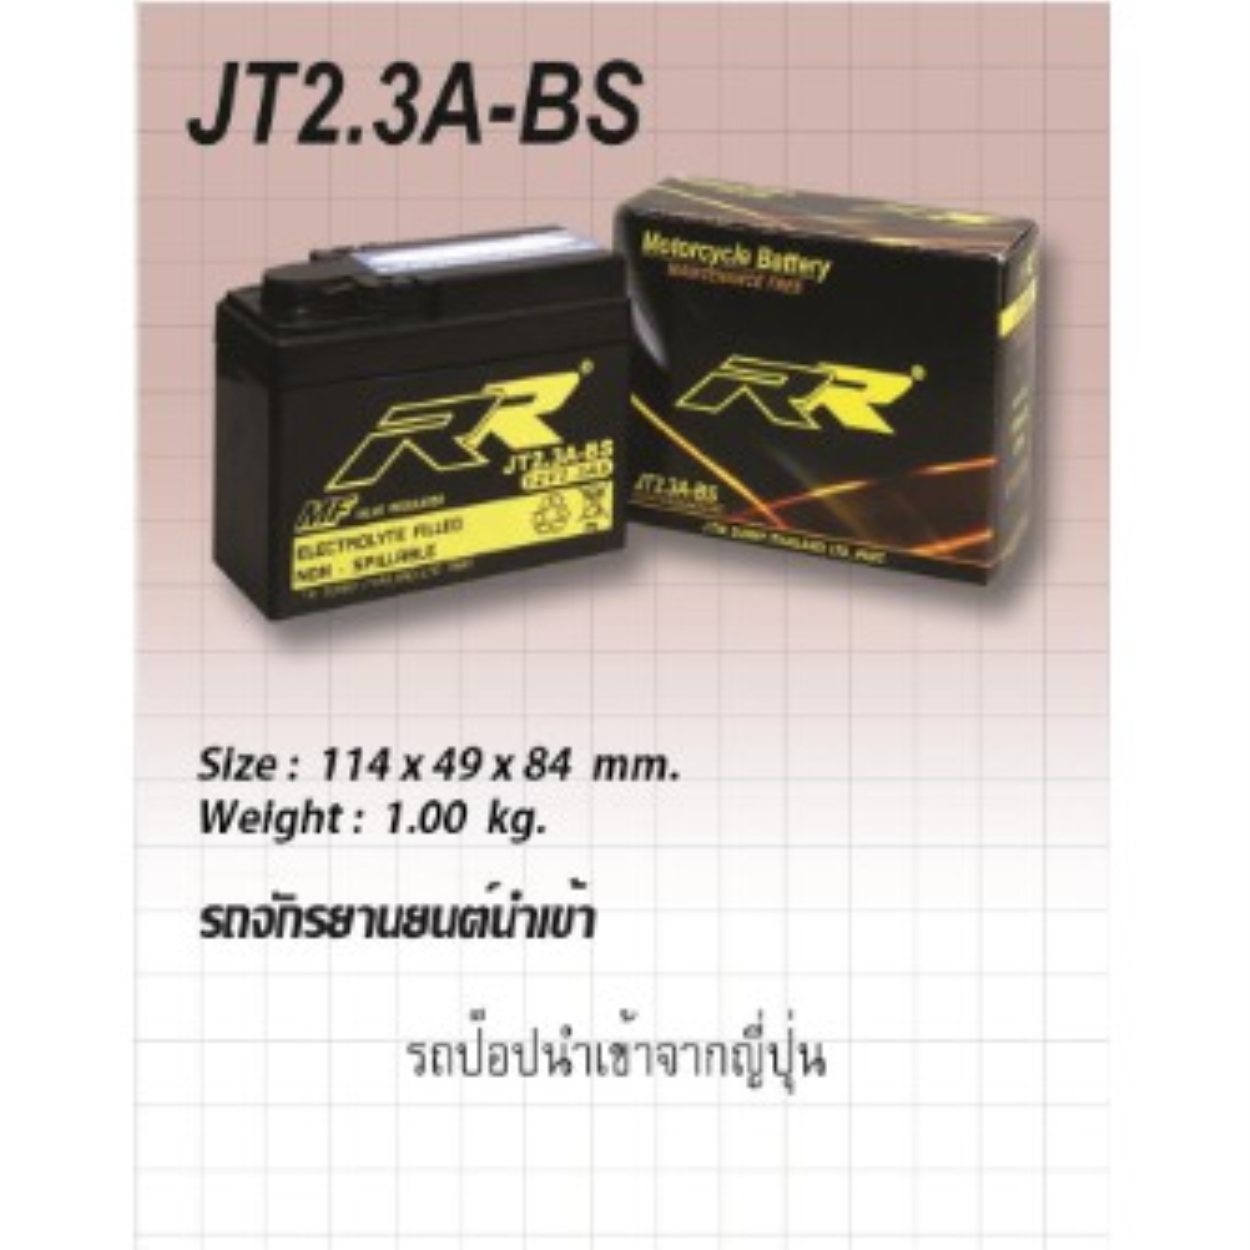 แบตเตอรี่ รถป๊อป RR รุ่น JT2.3A-BS ขนาด 12V 2.3Ah JT2.3A